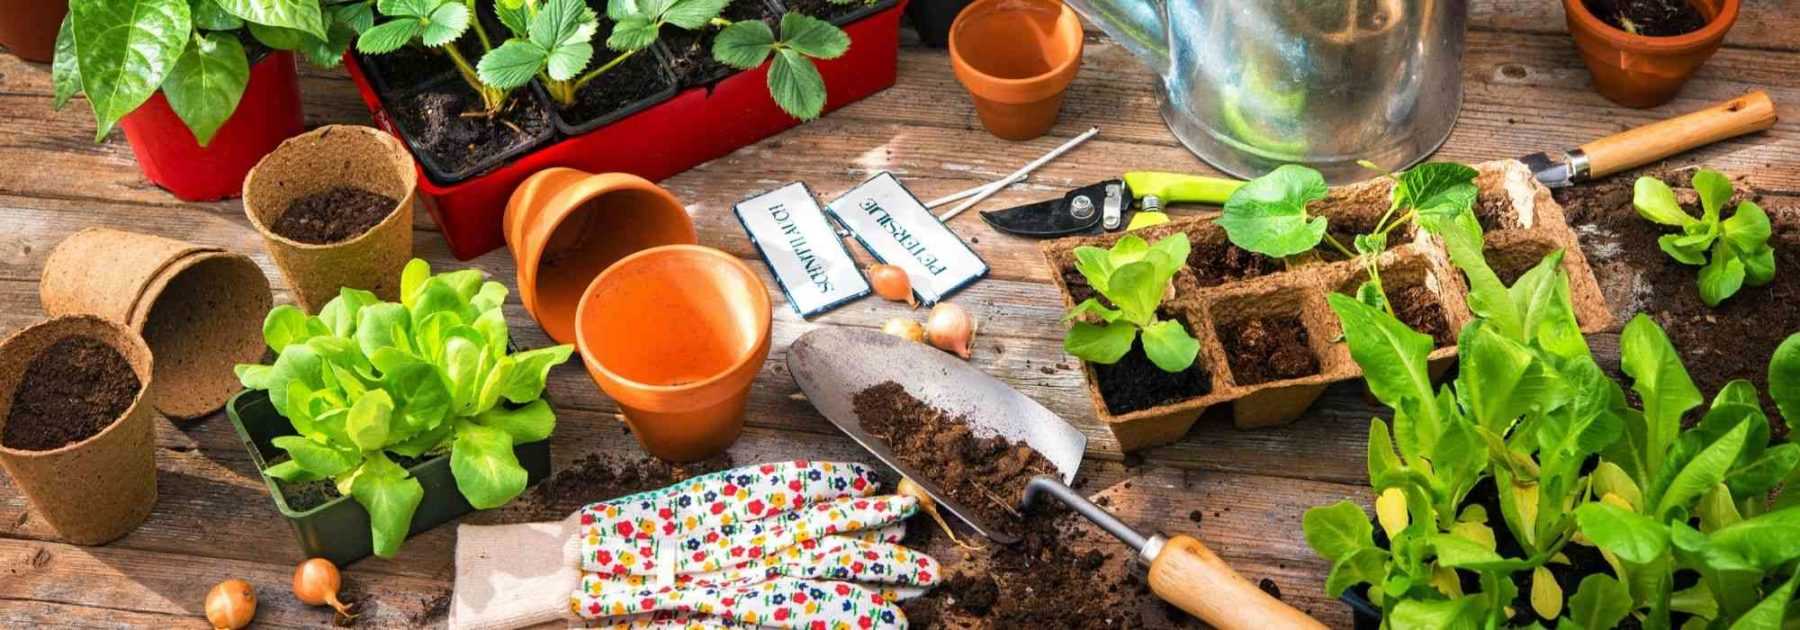 Ces 5 trucs simples et bon marché pour arroser vos plantes d